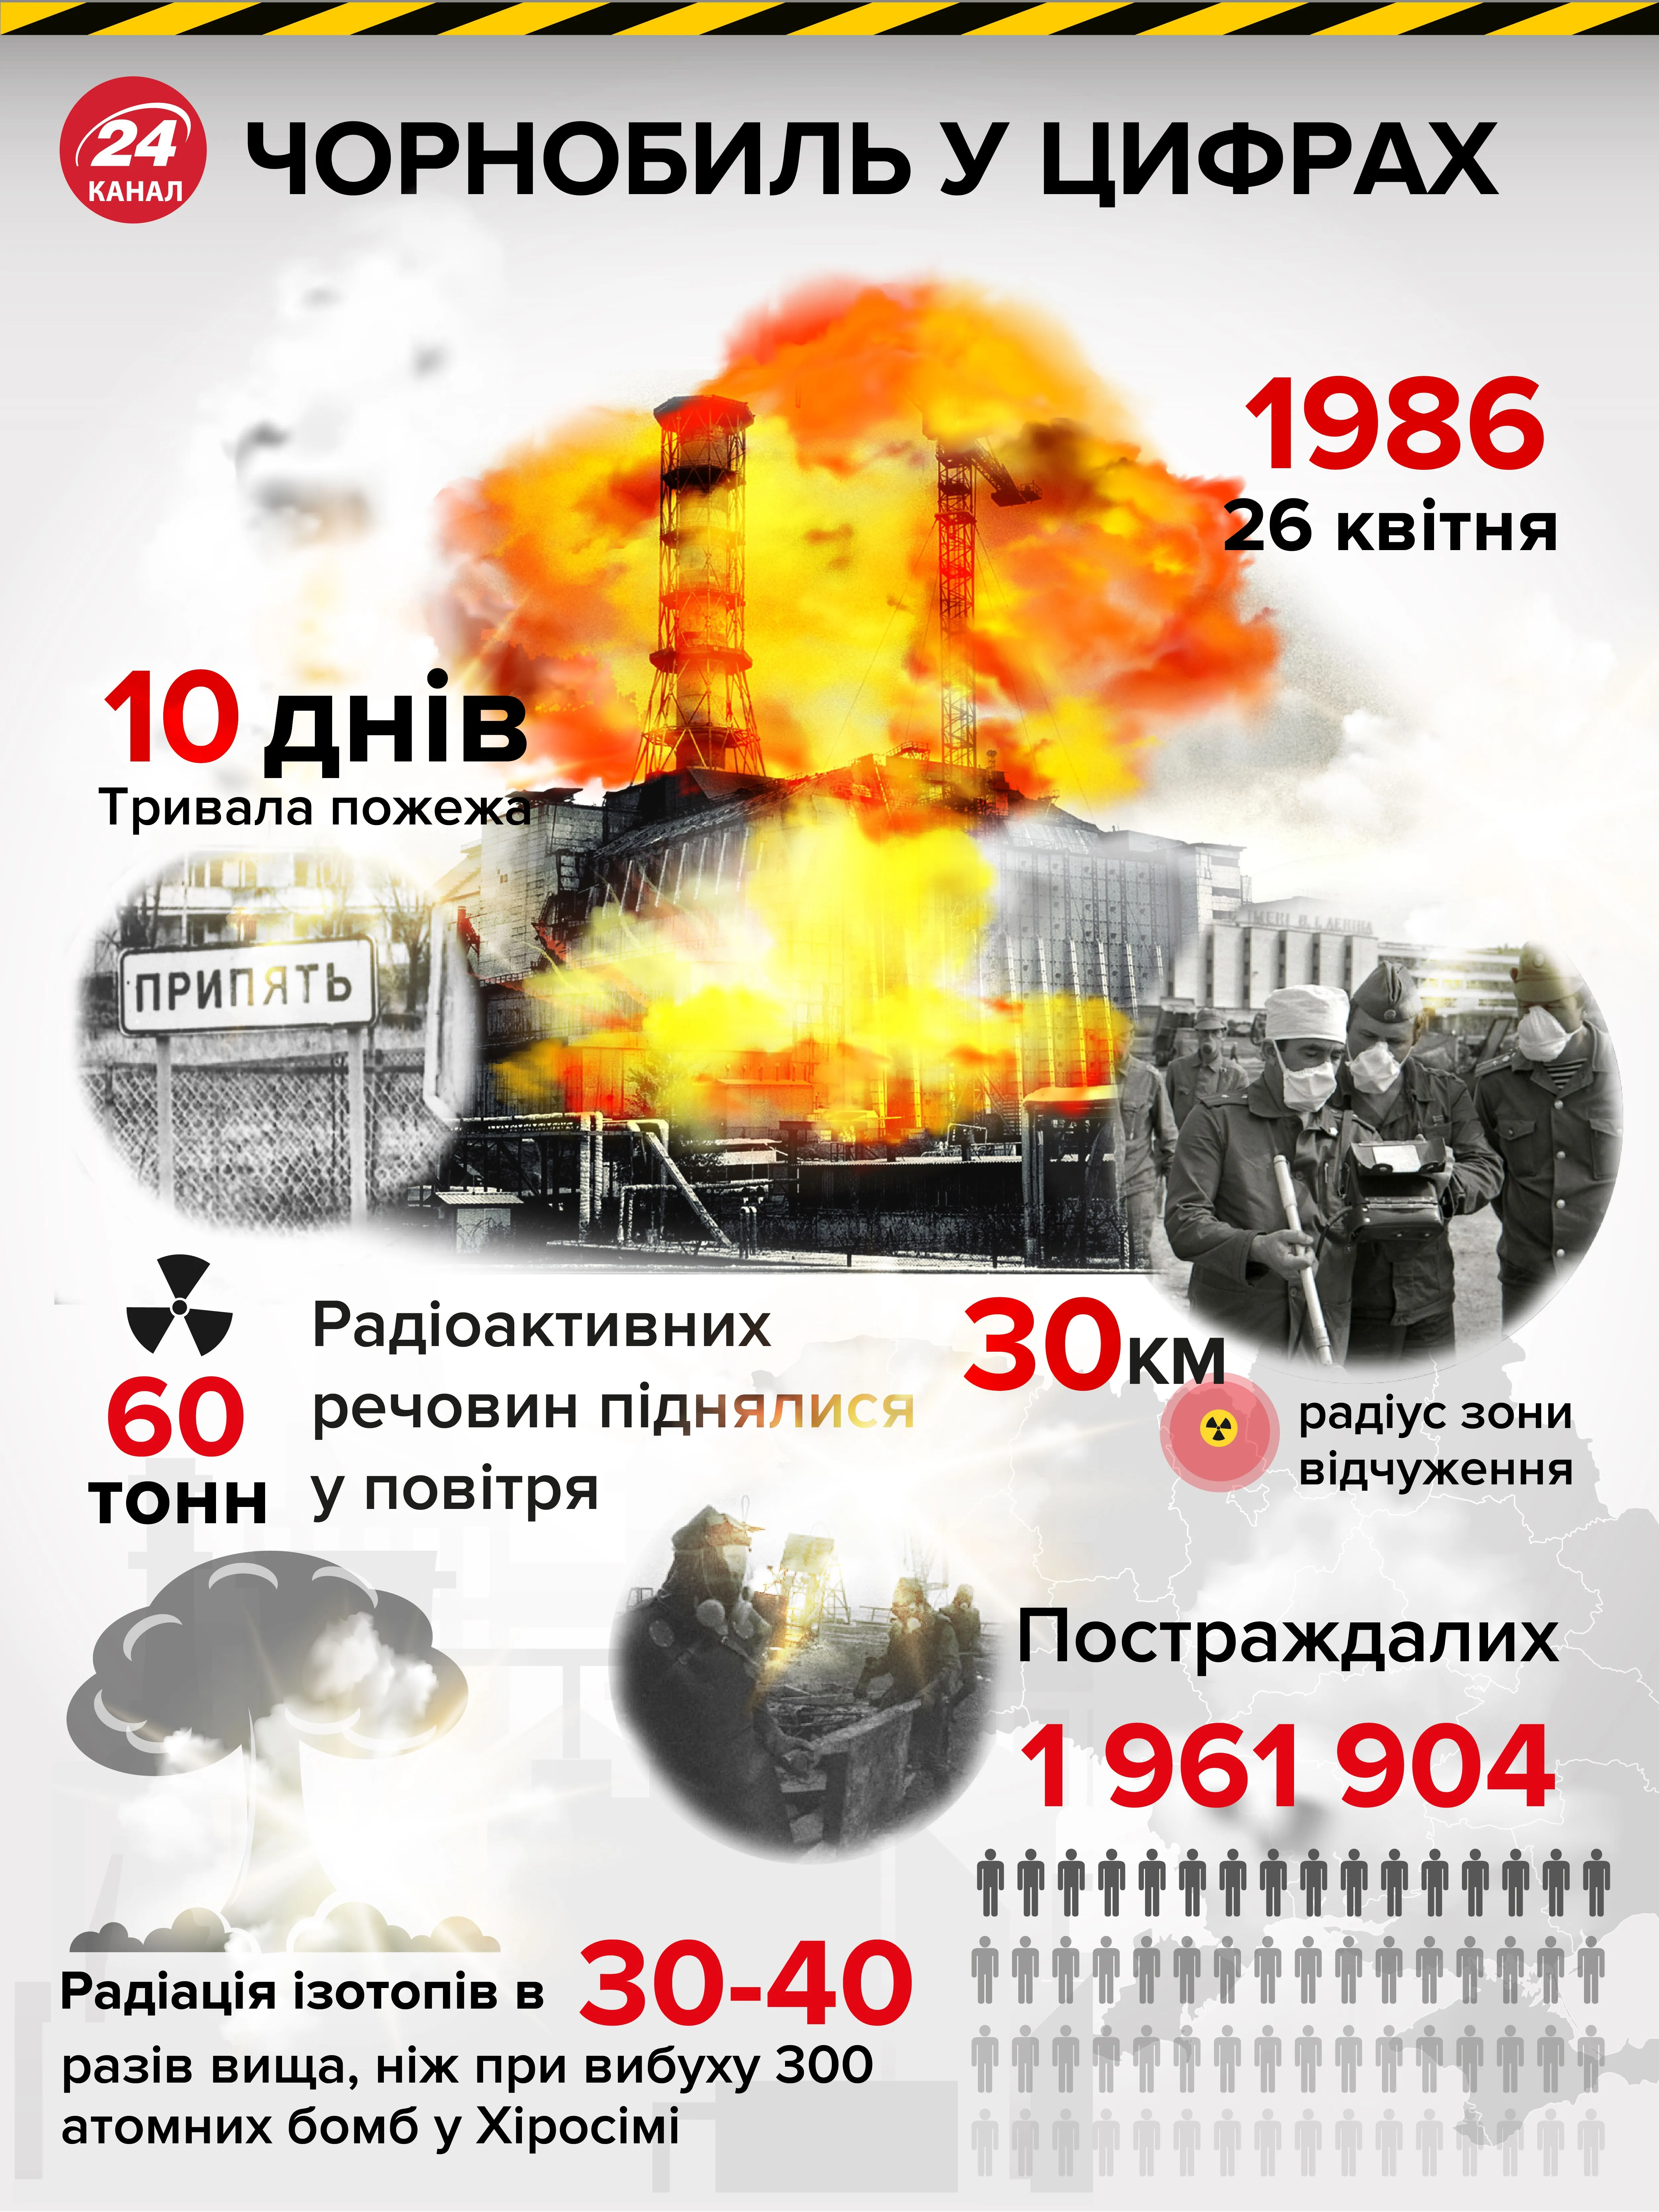 Наслідки пожеж в Чорнобилі